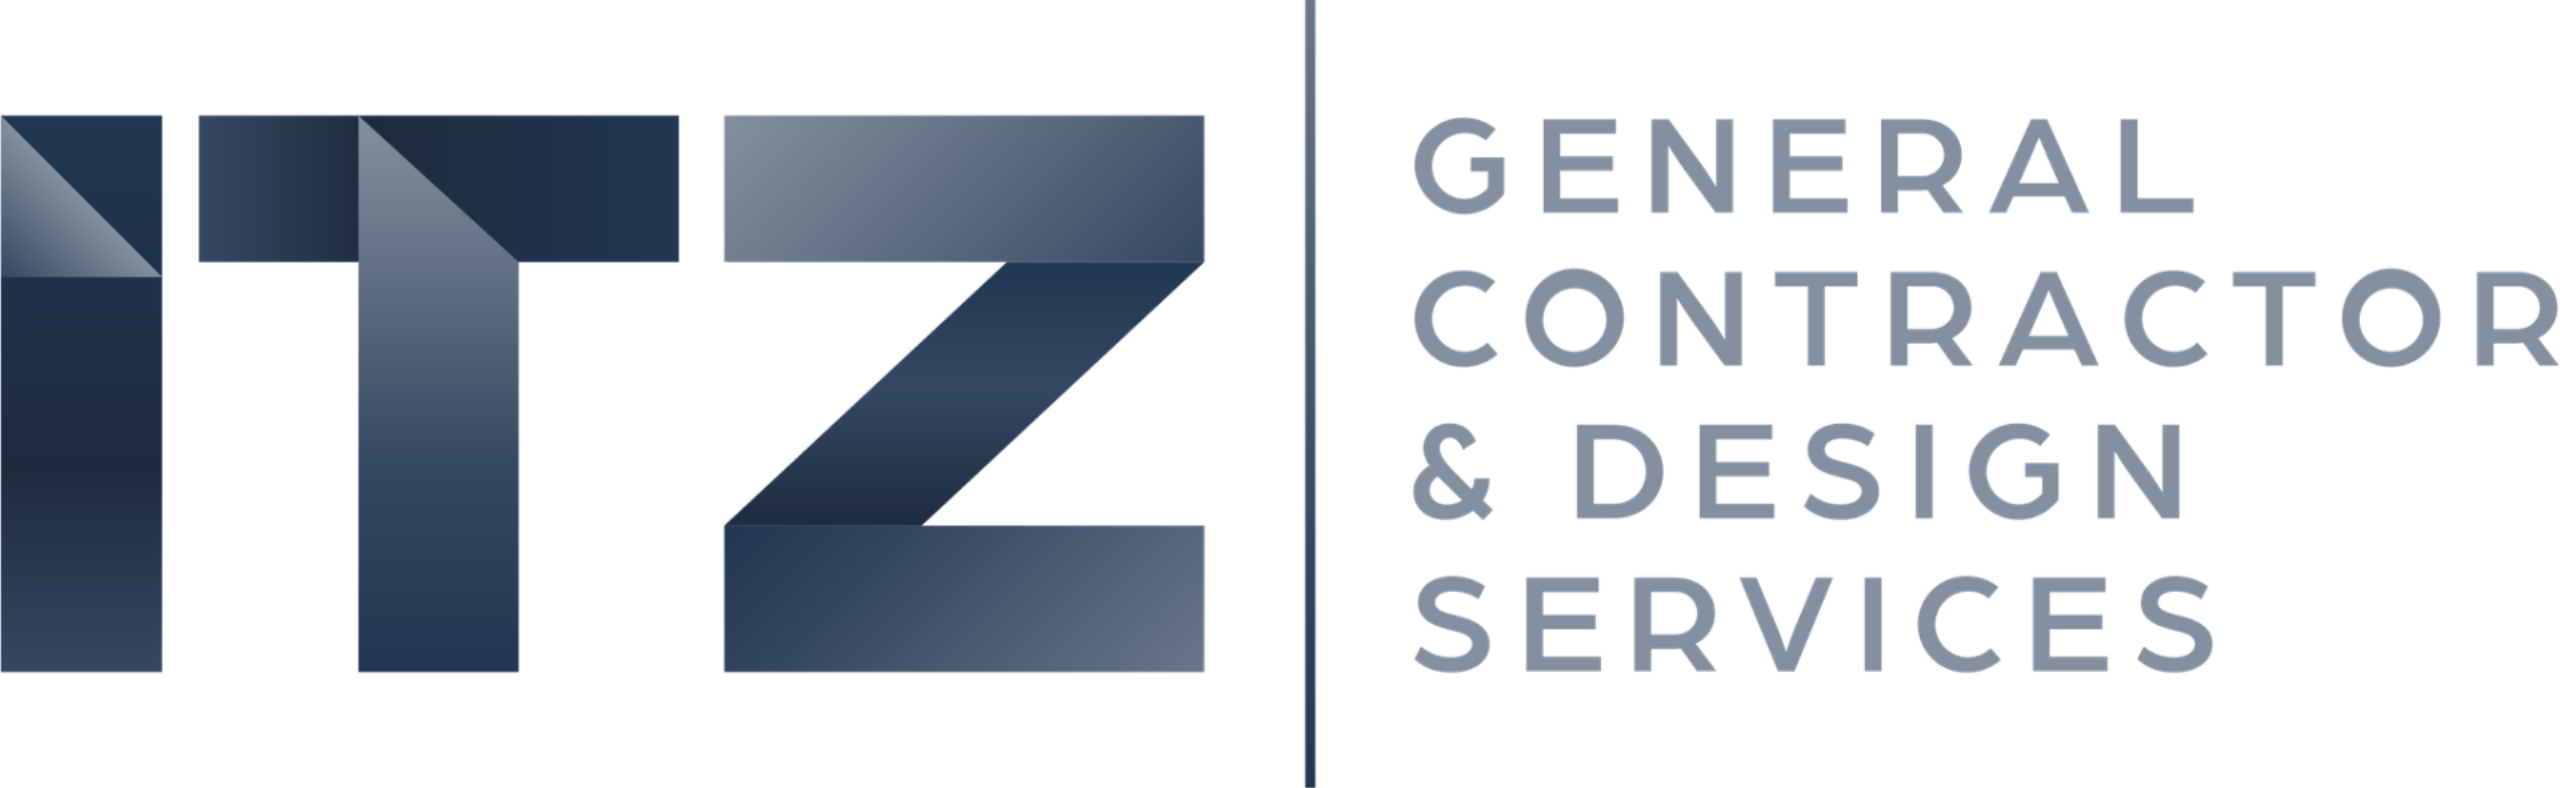 ITZ General Contractor & Design Services Logo